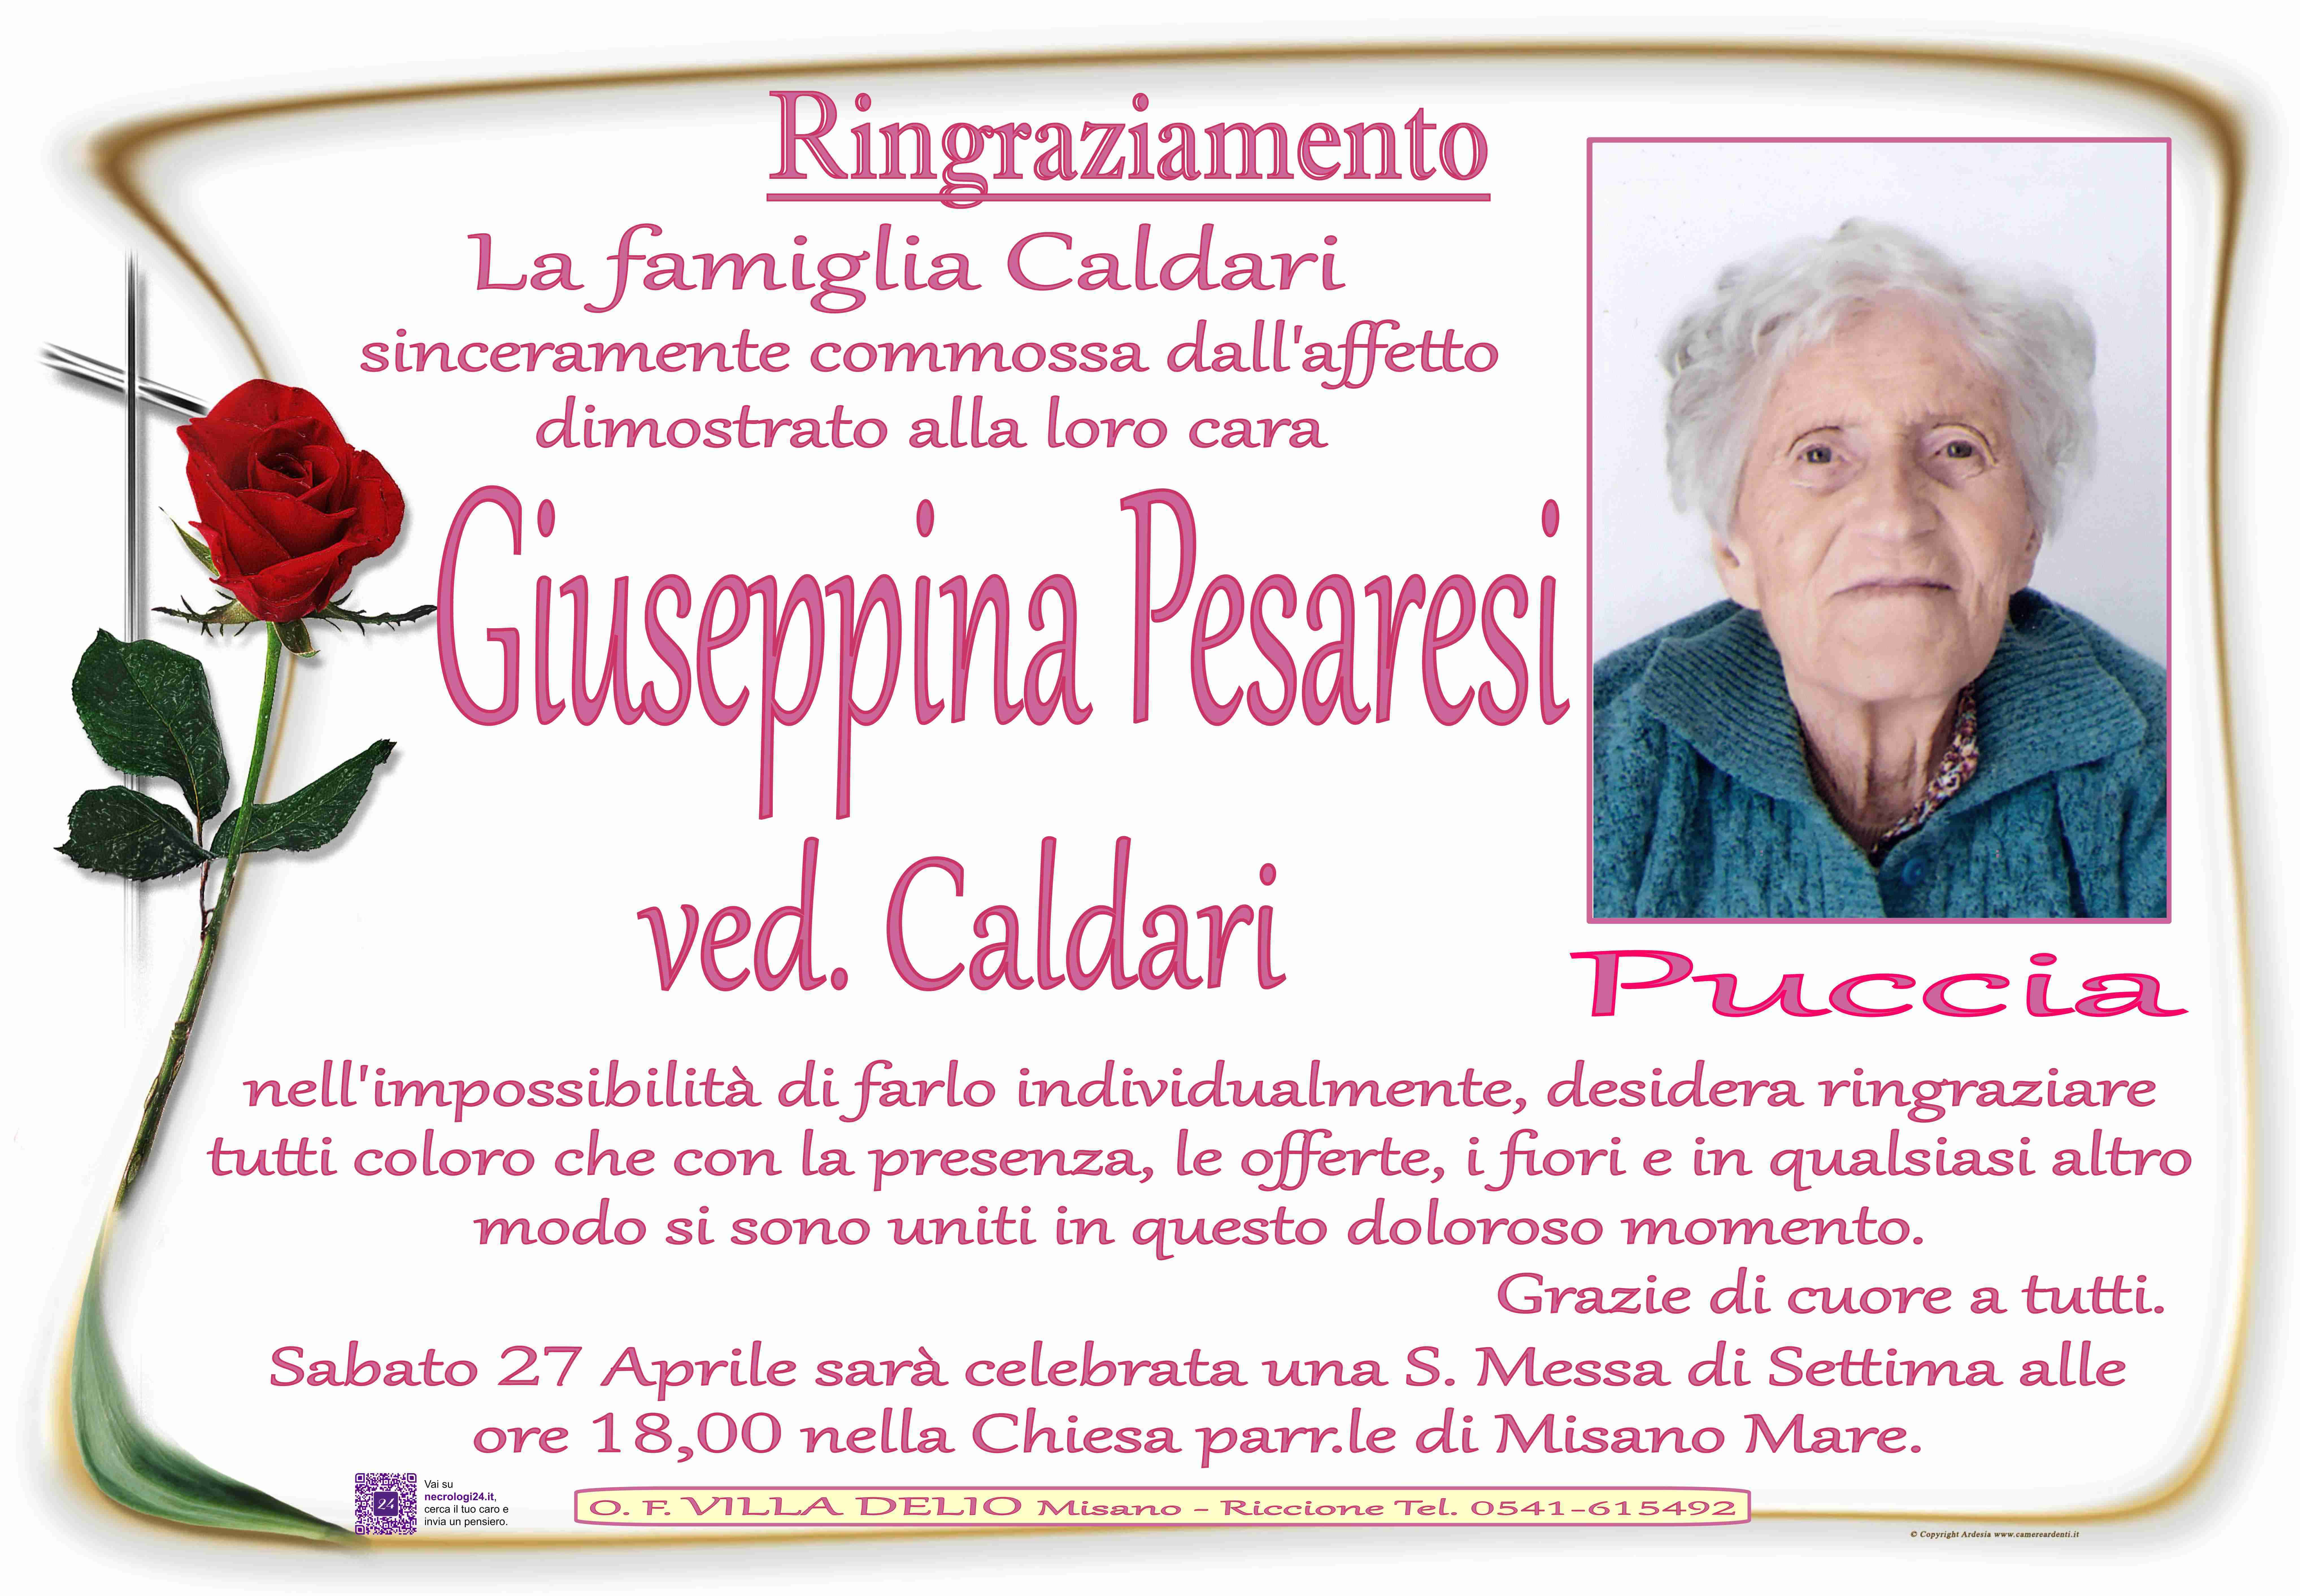 Giuseppina Pesaresi